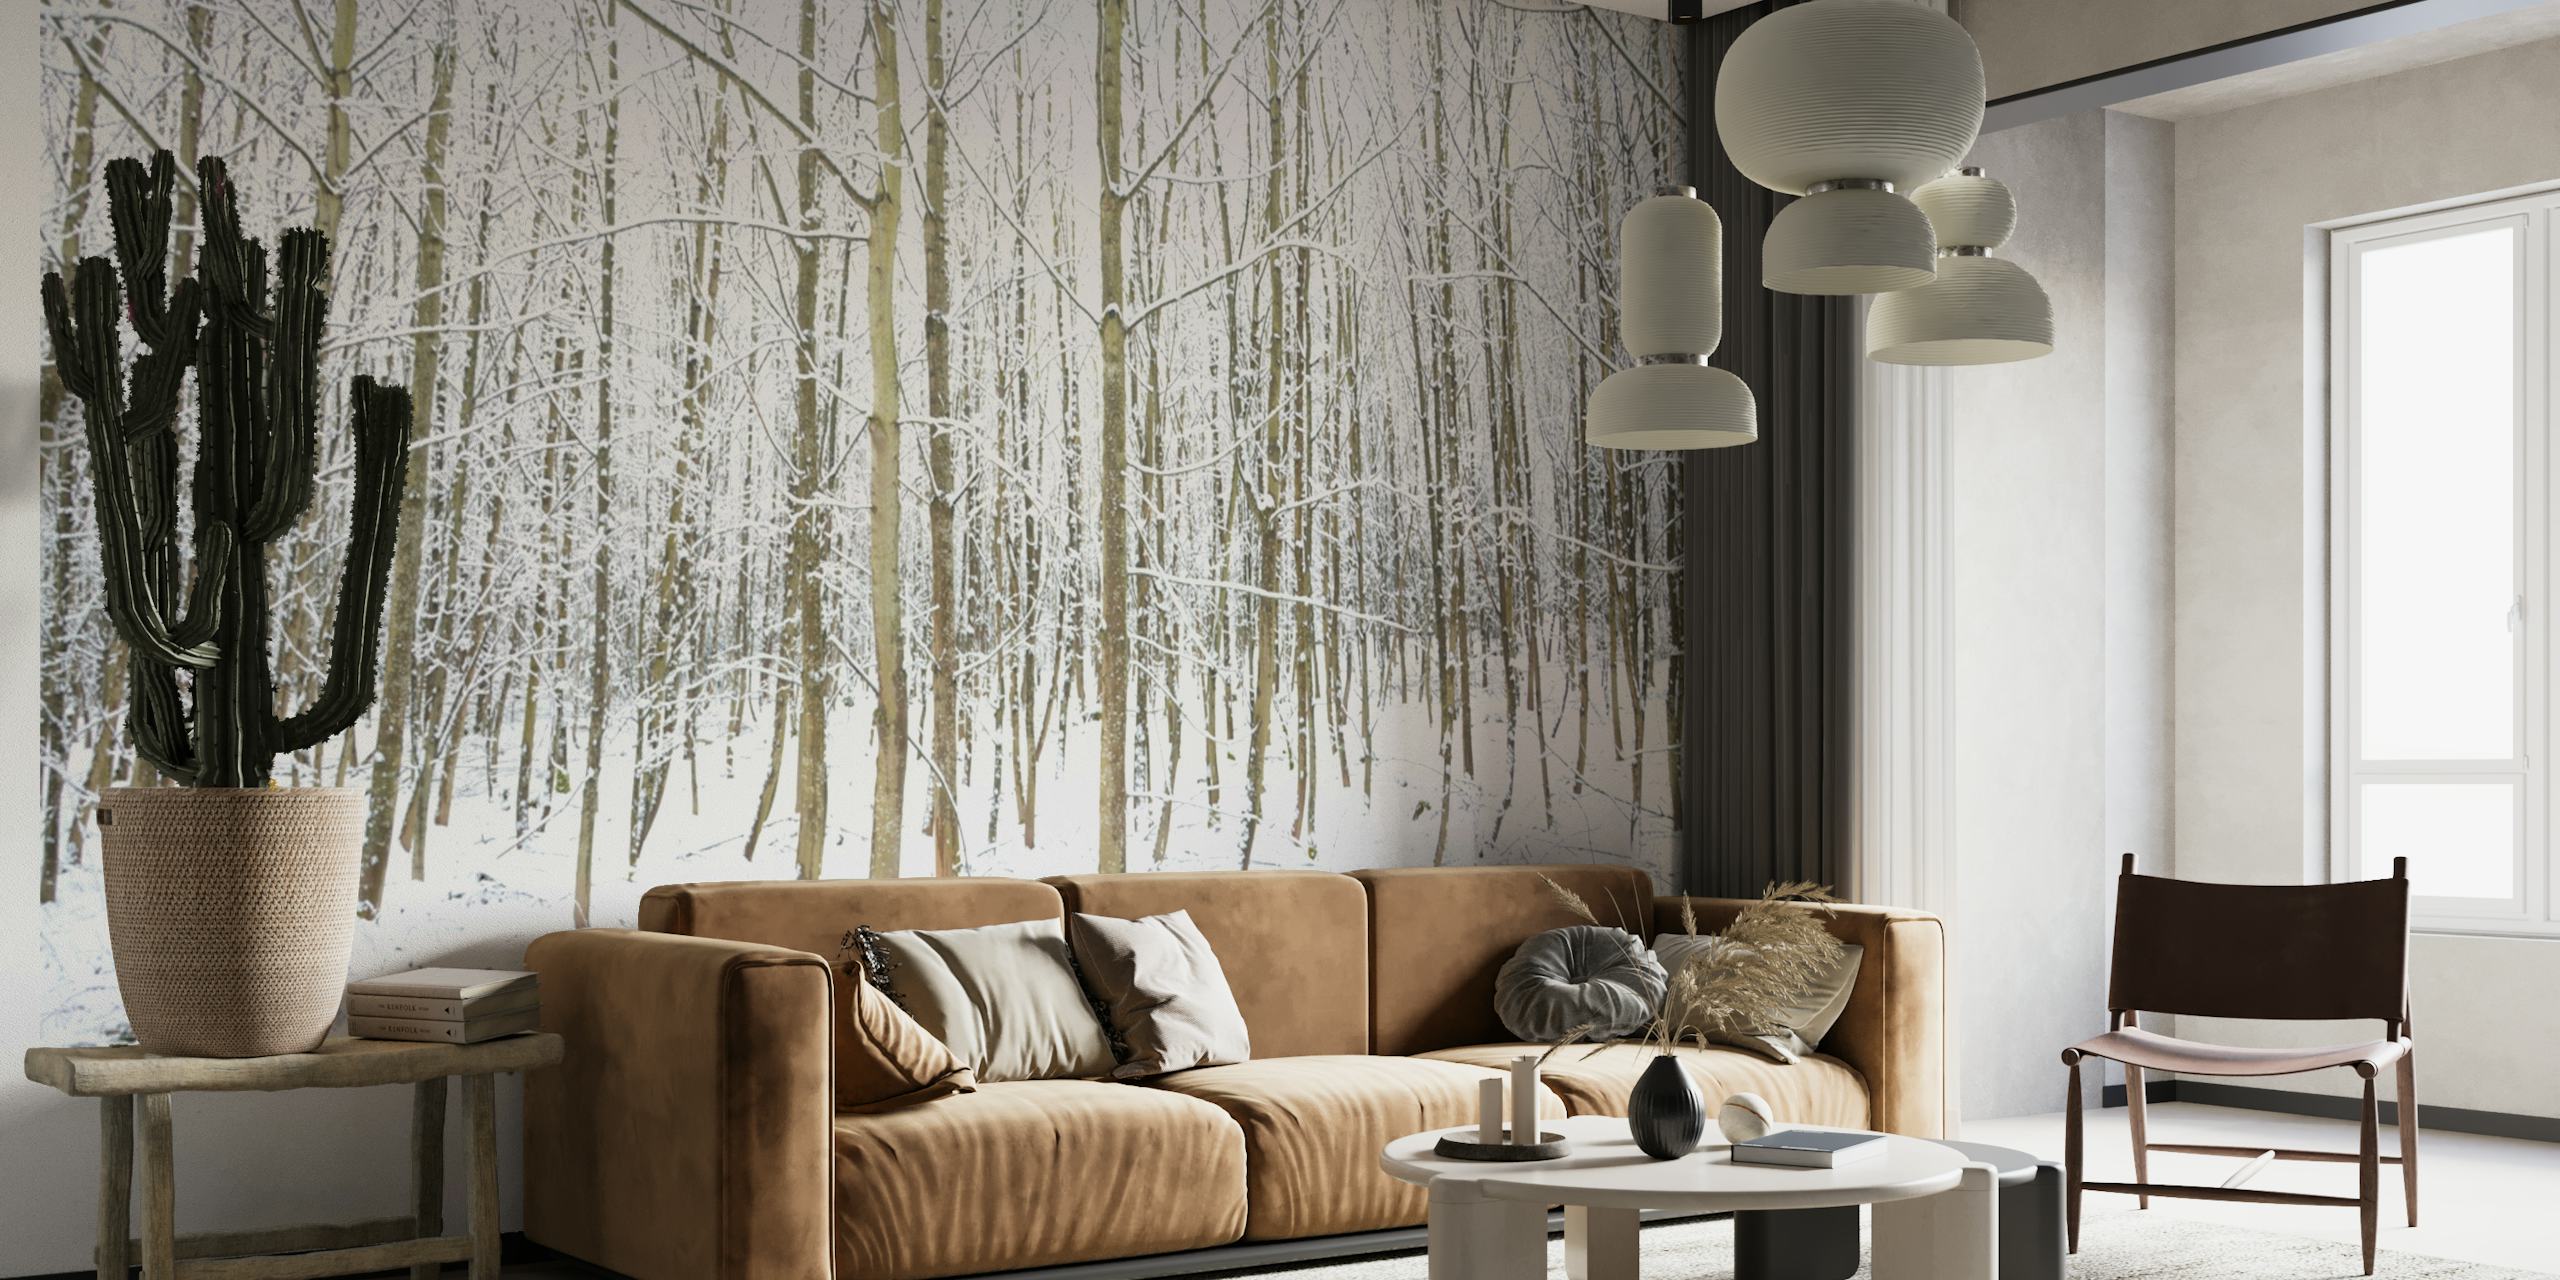 Fotomural vinílico de parede Floresta invernal com árvores cobertas de neve